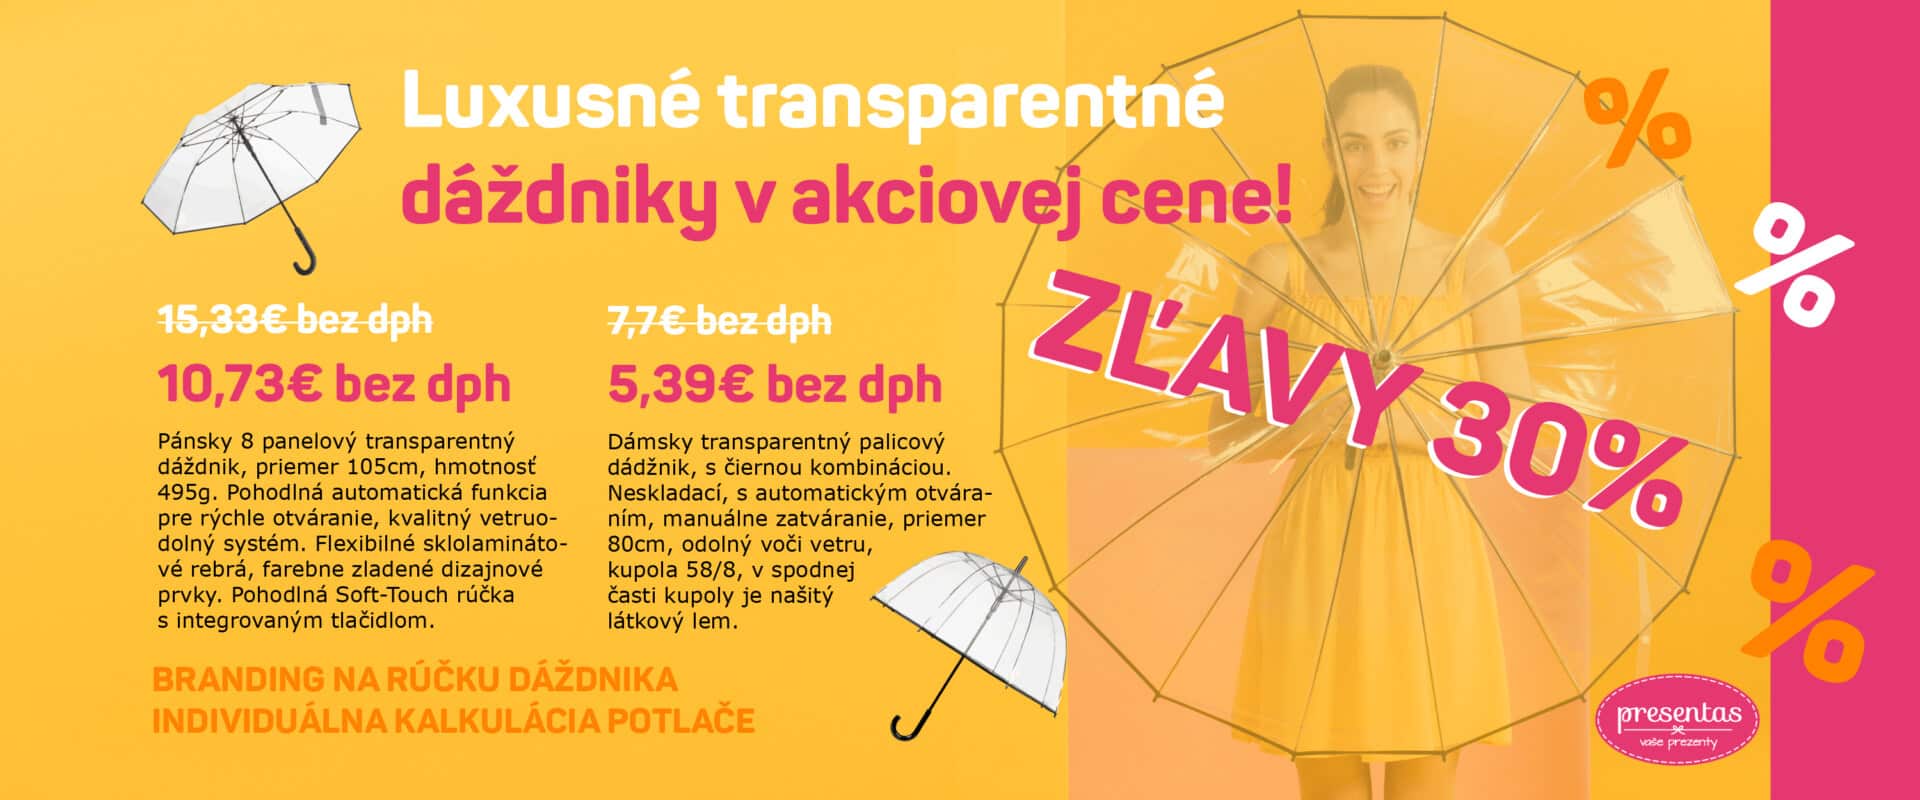 Akcia na luxusné transparentné dáždniky. Dáždniky s vašou potlačou v akciovej cene